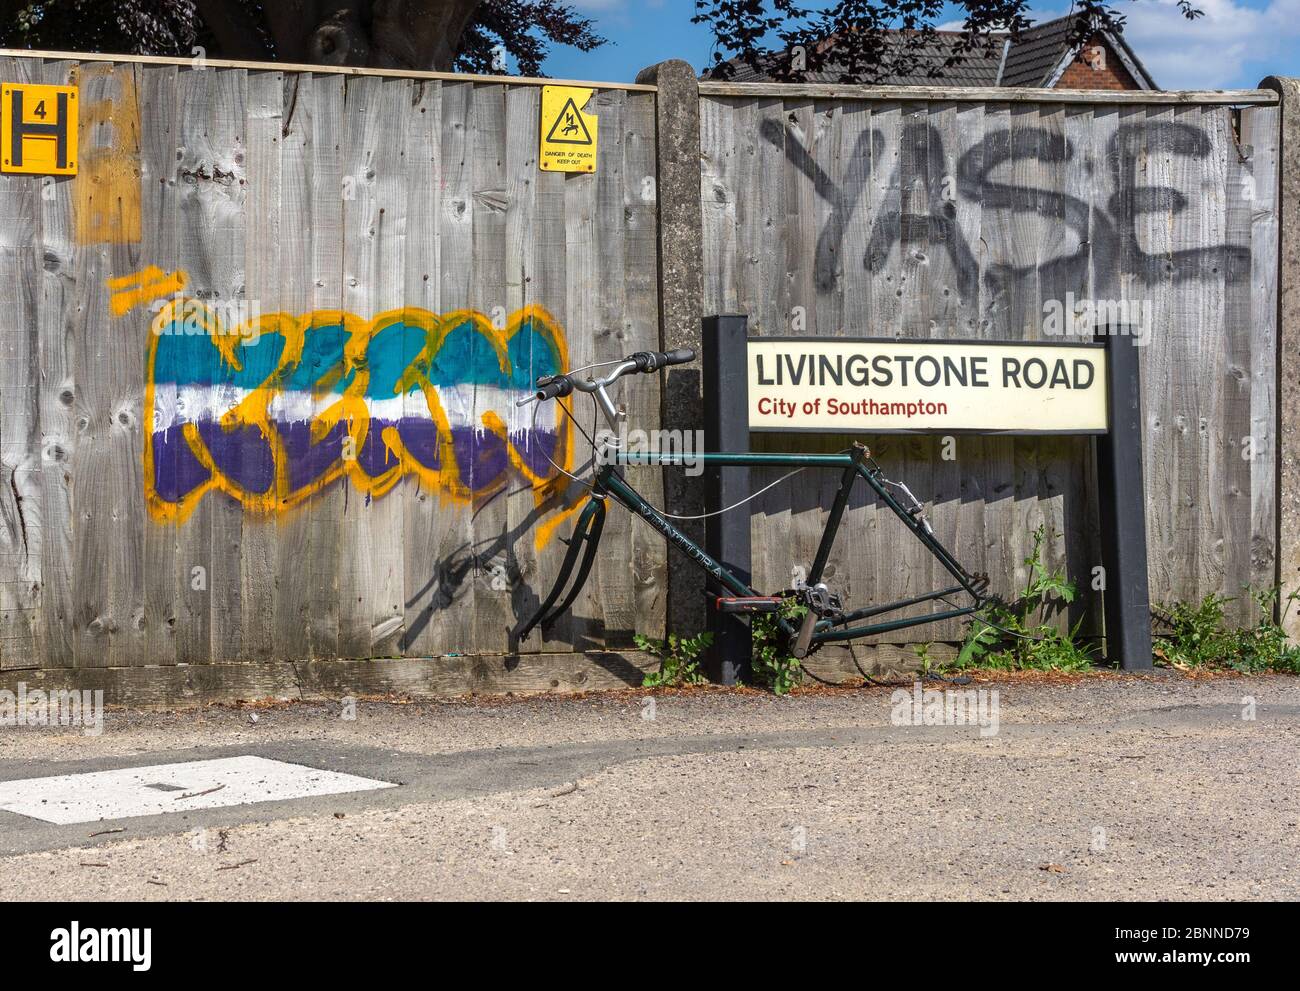 Estructura de bicicleta sin ruedas encerradas a un letrero, presumiblemente después de robo en la ciudad inglesa de Southampton, Reino Unido Foto de stock